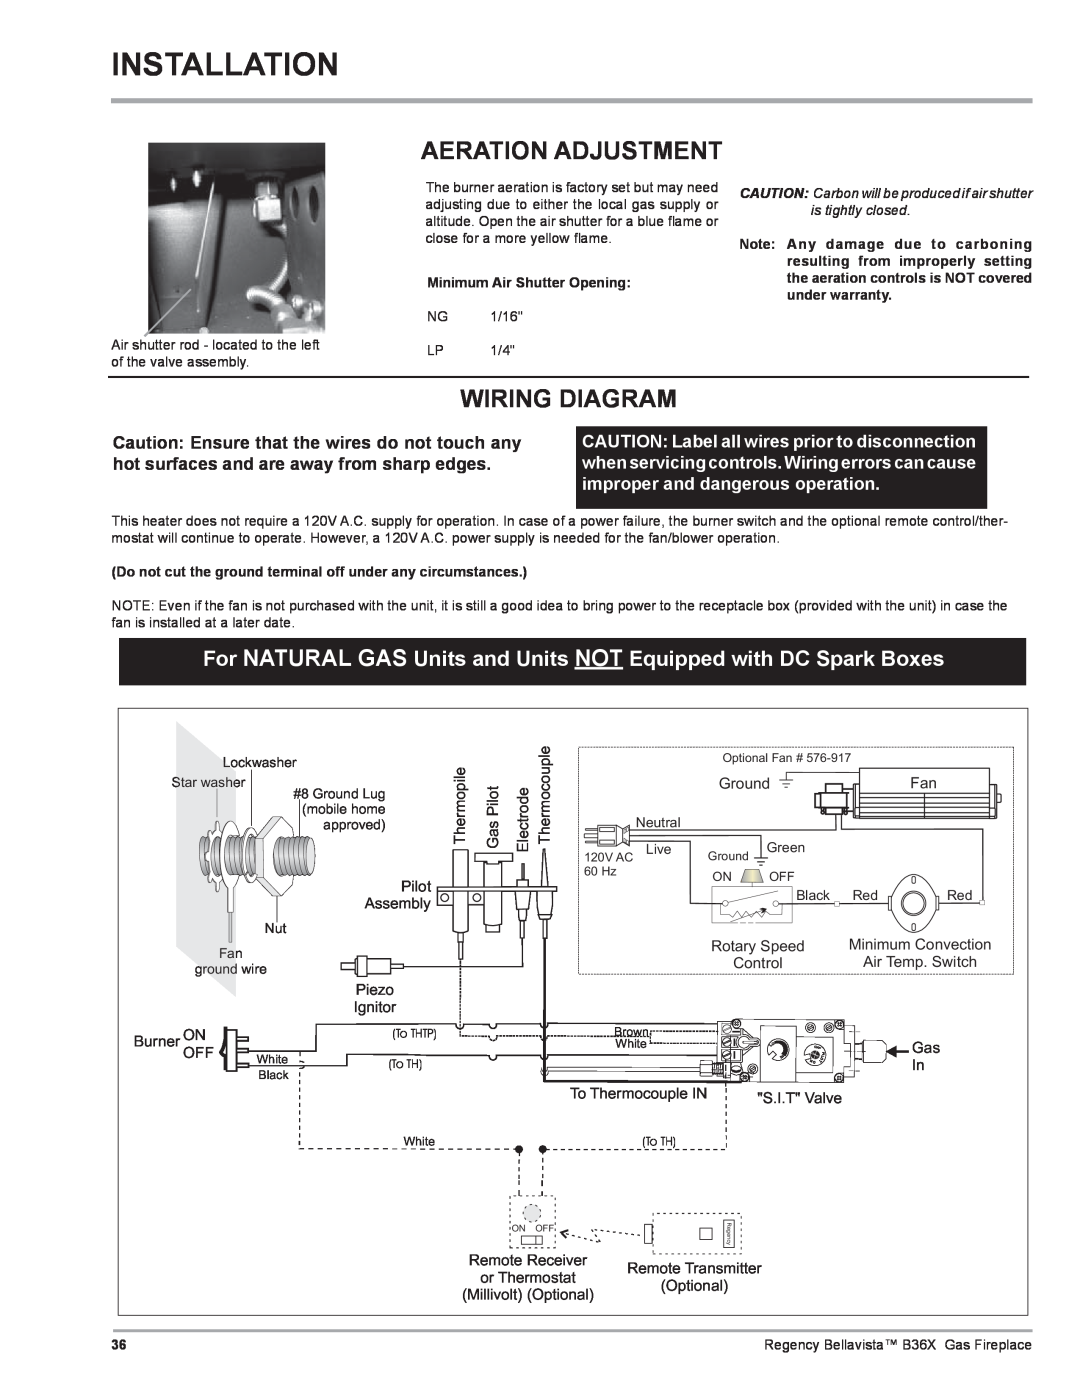 Regency B36X installation manual Installation, Aeration Adjustment, Wiring Diagram 